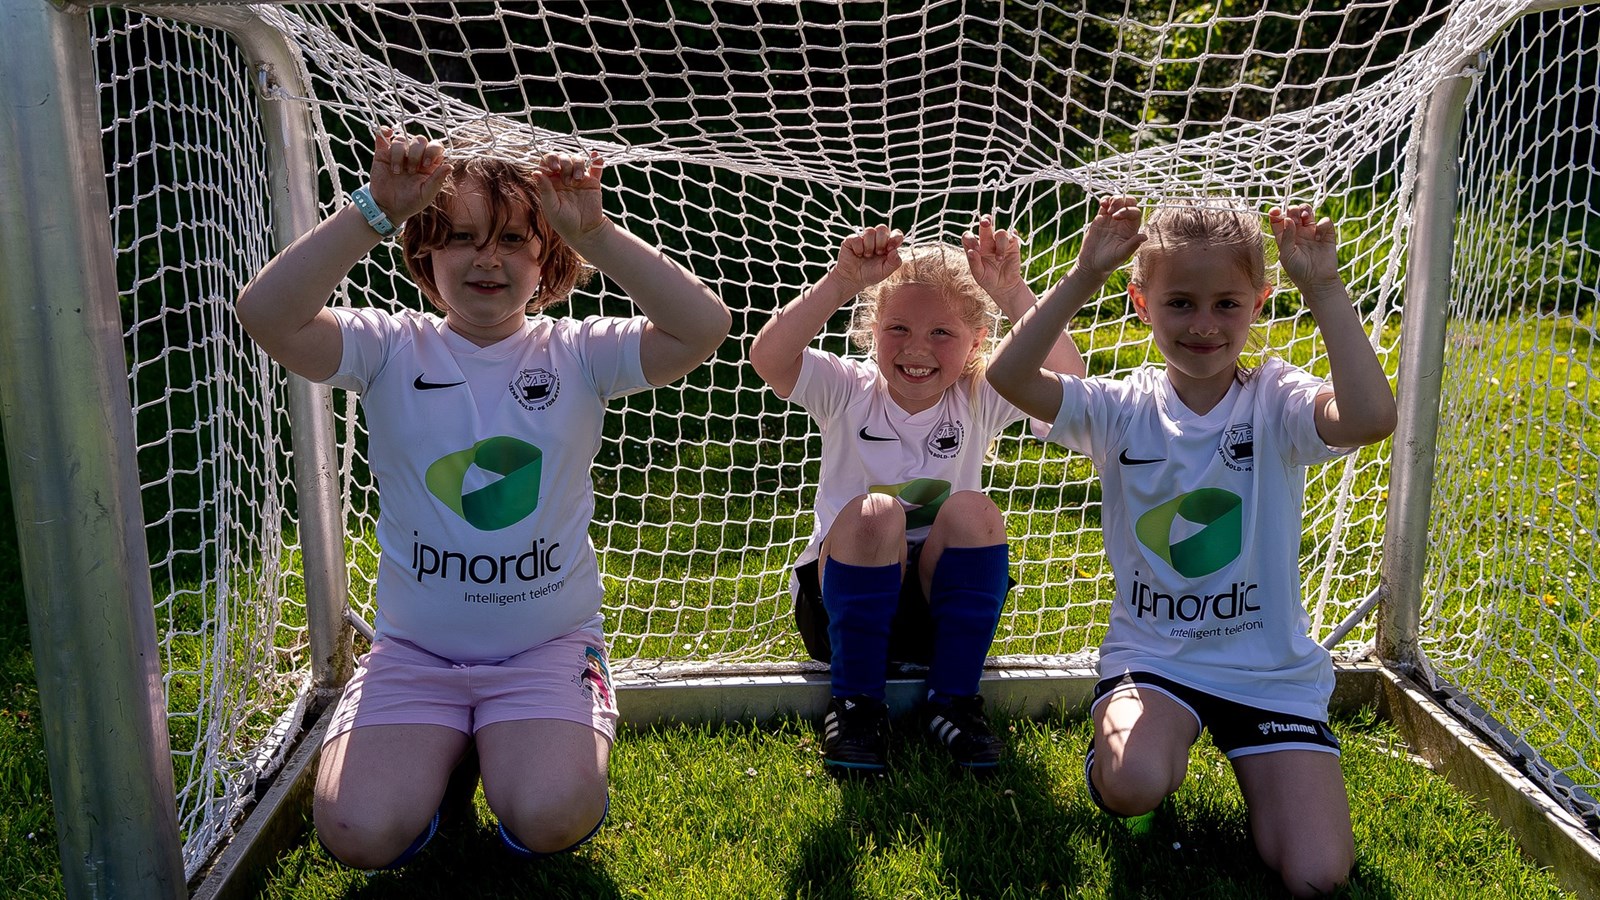 DBU Jylland søger Playmakere til børnefodbold